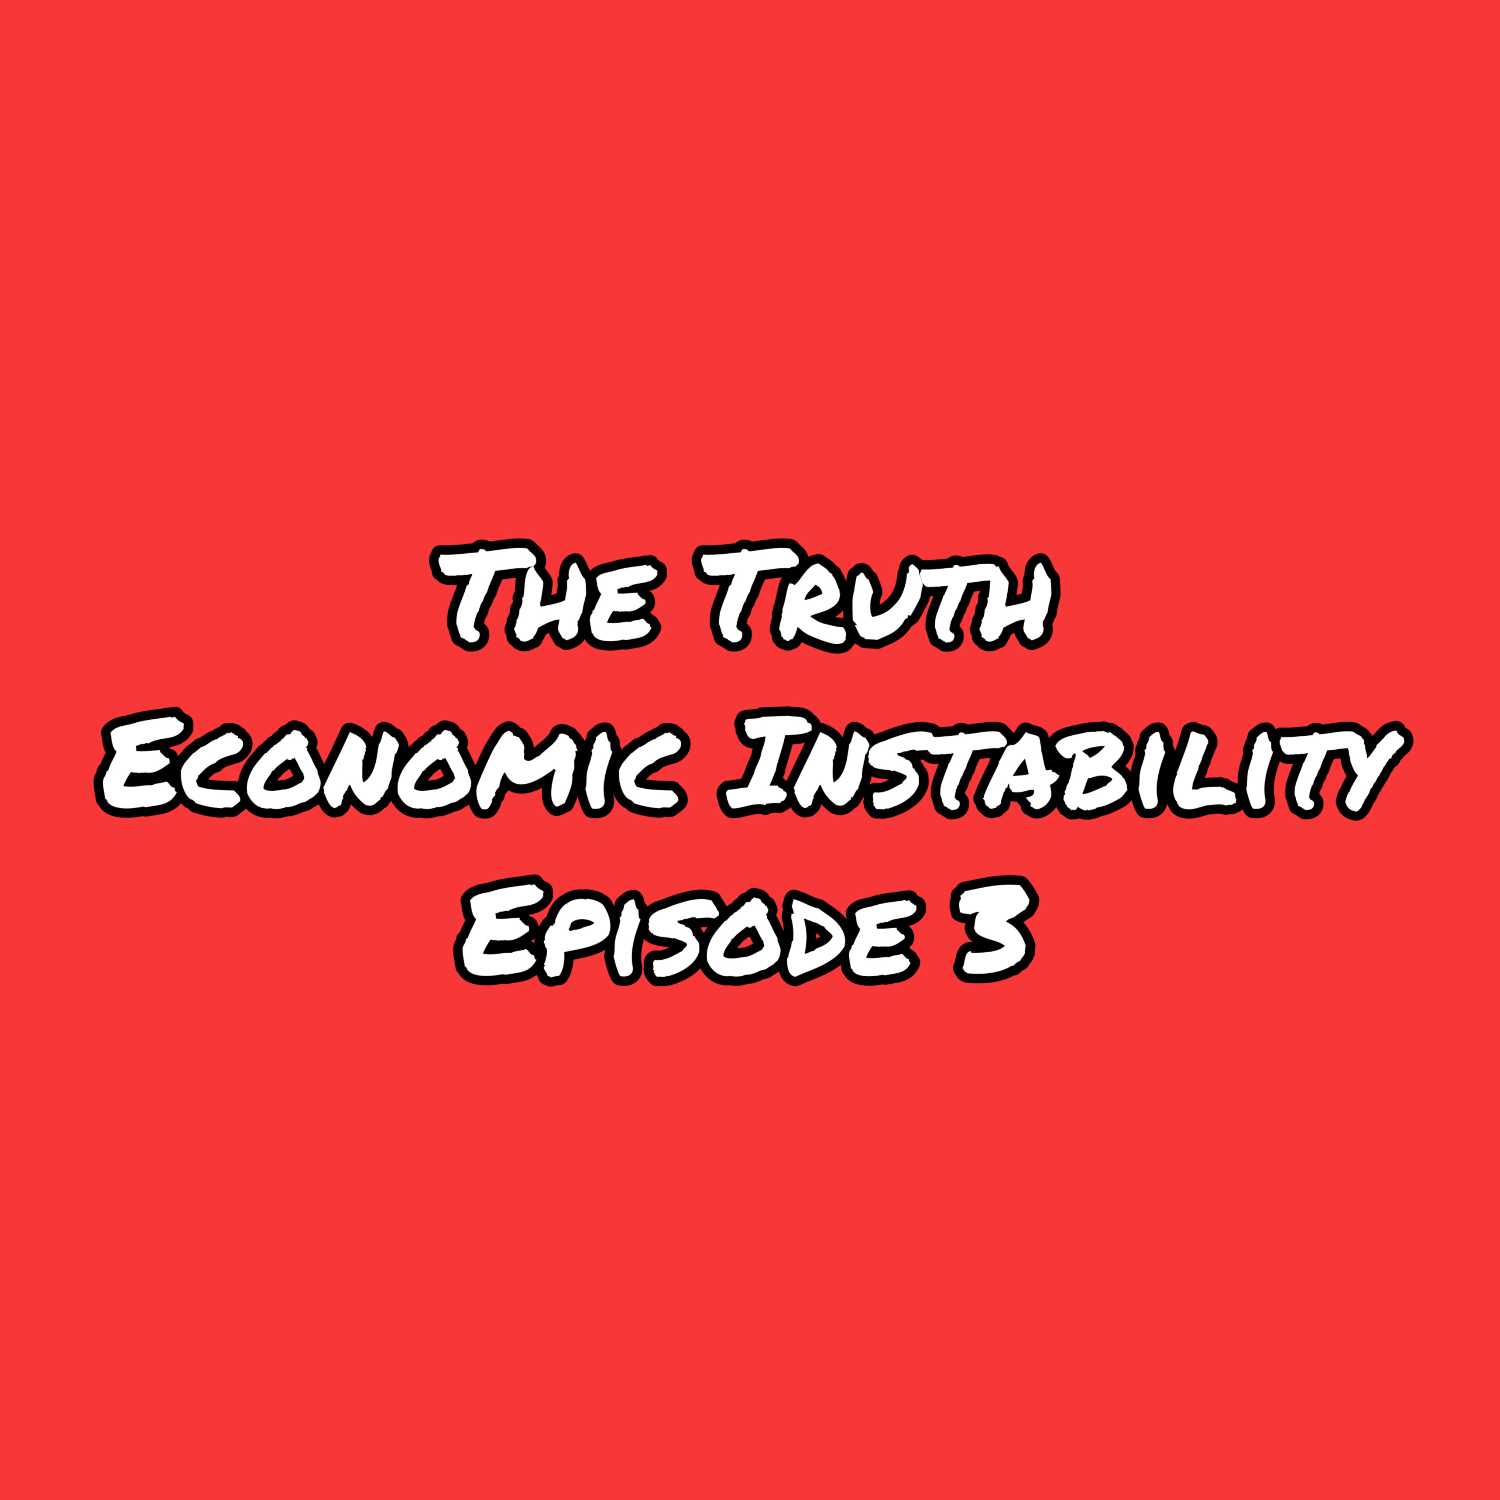 Economic Instability Ep 3